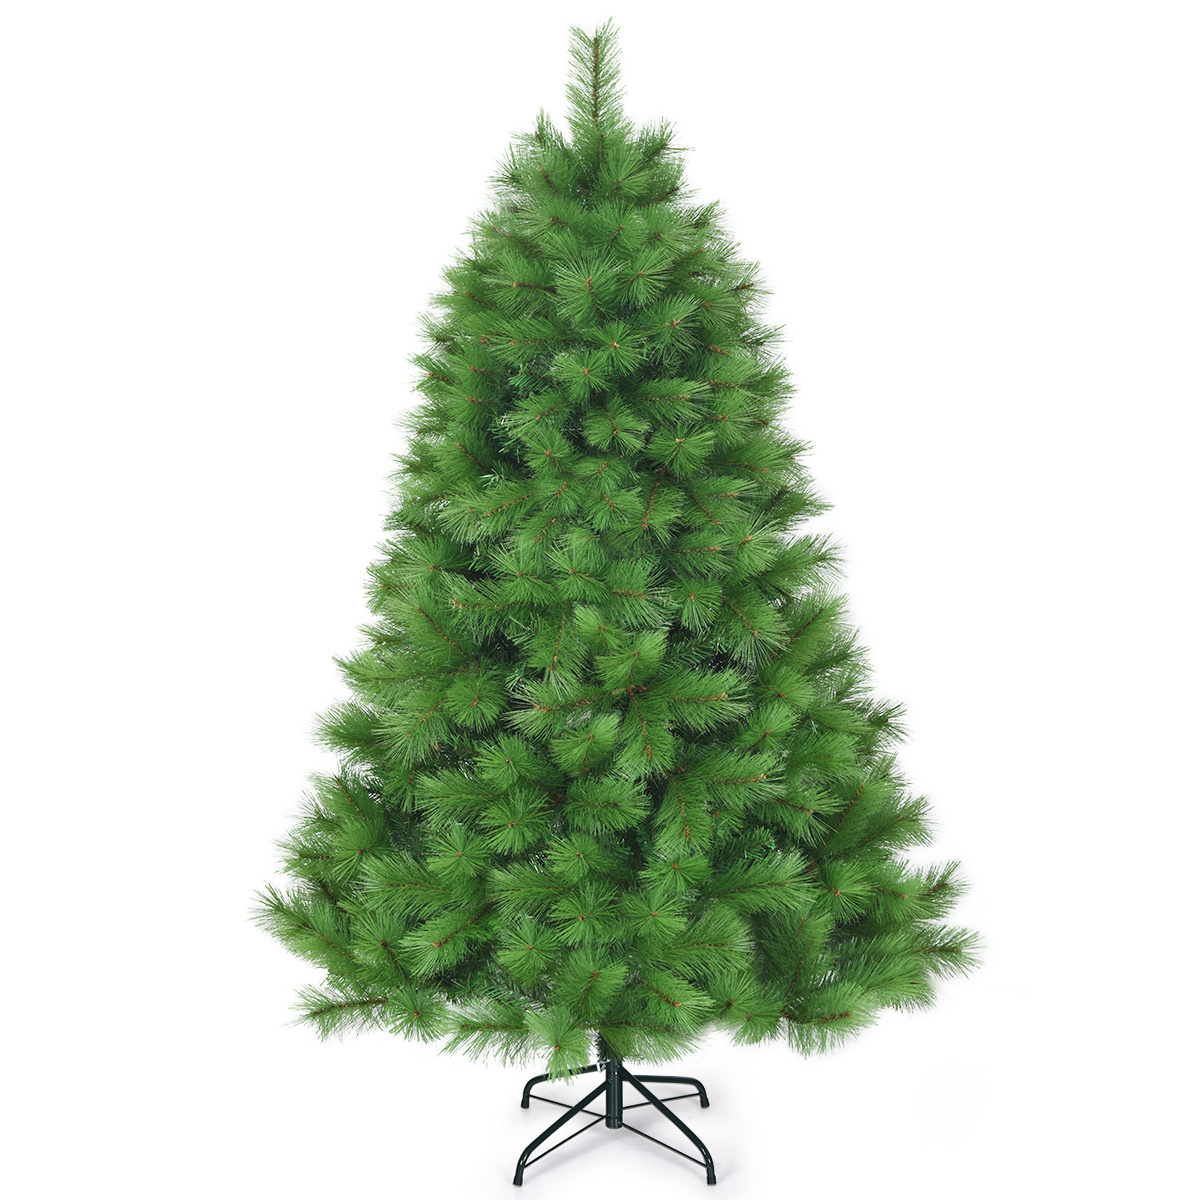 VC 1 günstig Kaufen-Coast 180 cm künstlicher Weihnachtsbaum Weihnachtsbaum pvc Nadeln künstlicher Baum mit Metallständer grün. Coast 180 cm künstlicher Weihnachtsbaum Weihnachtsbaum pvc Nadeln künstlicher Baum mit Metallständer grün <!